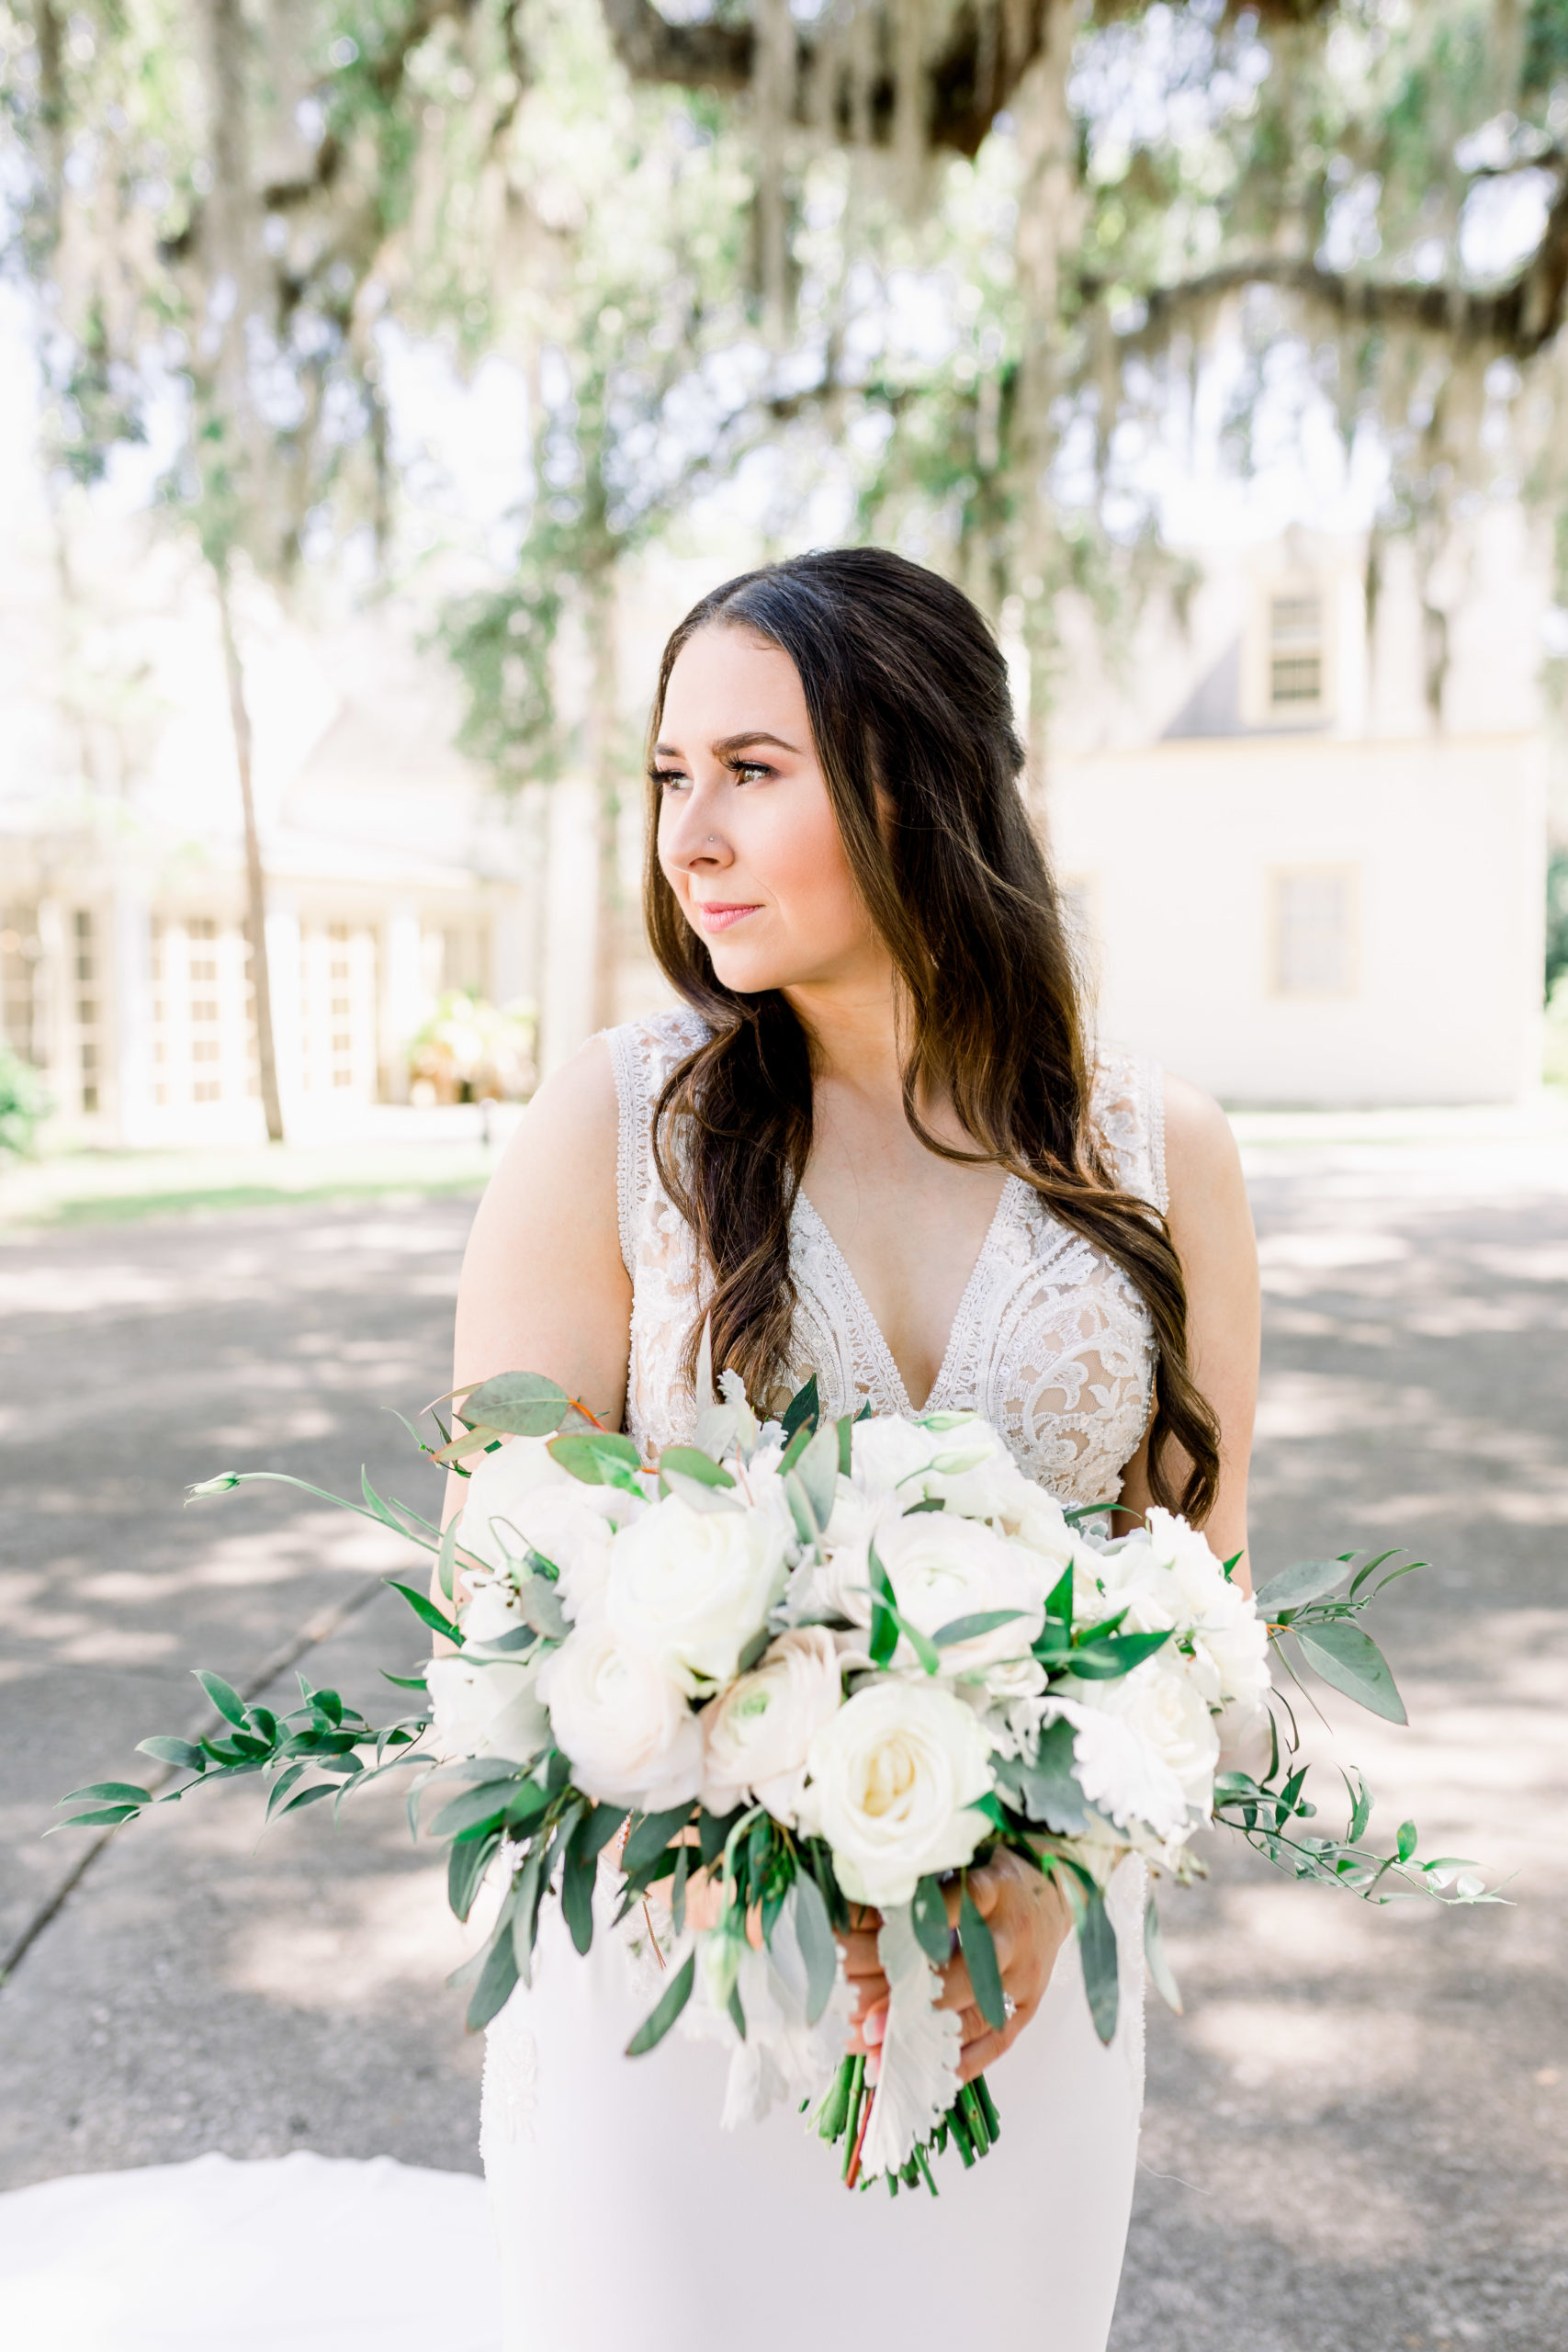 Makayla + Chasin | White and Blush Wedding Bouquet